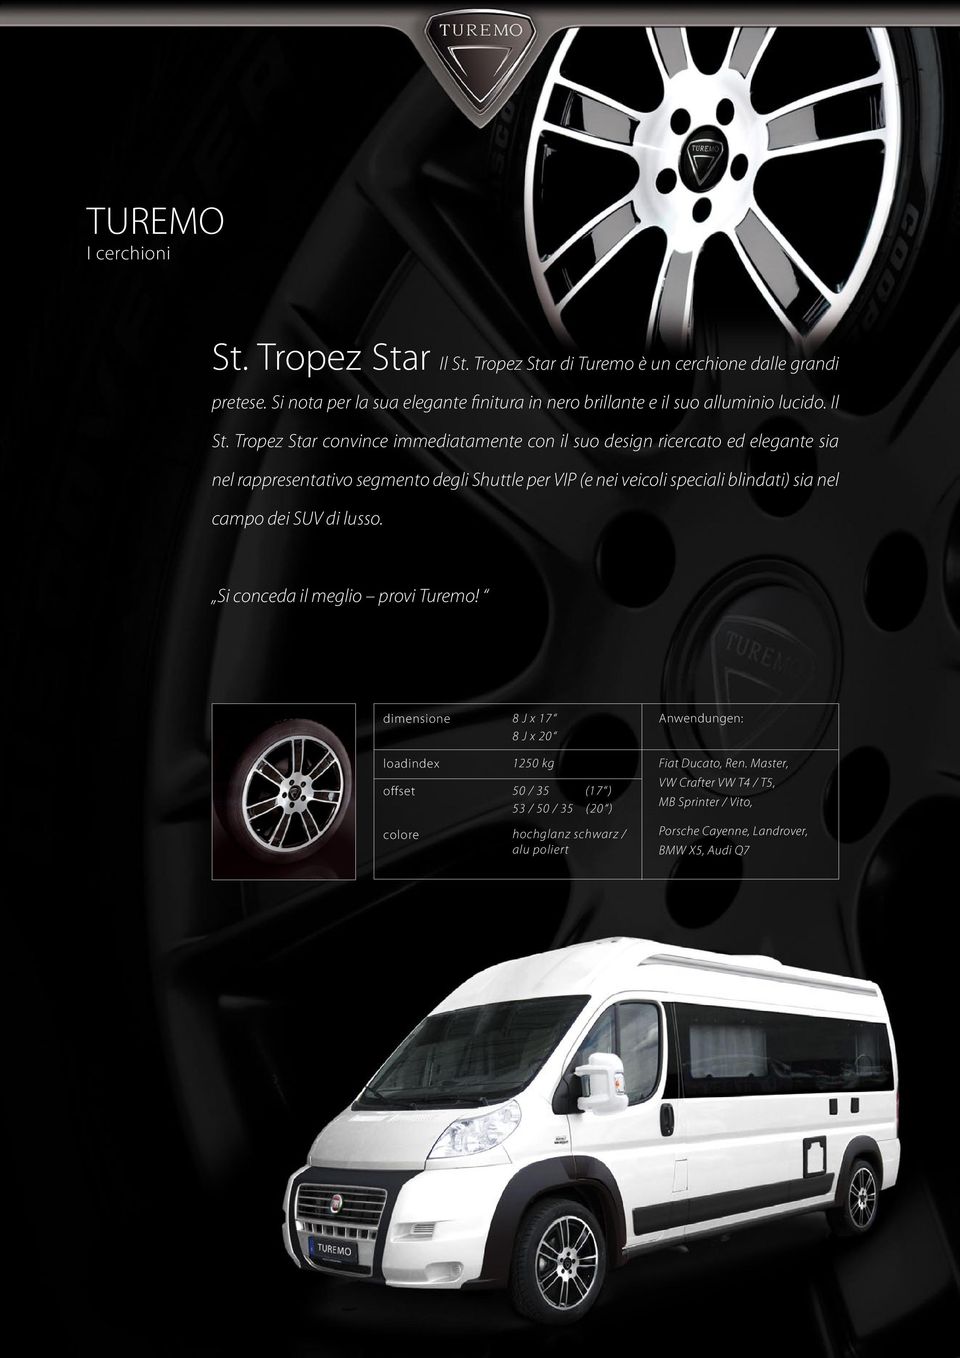 Tropez Star convince immediatamente con il suo design ricercato ed elegante sia nel rappresentativo segmento degli Shuttle per VIP (e nei veicoli speciali blindati)